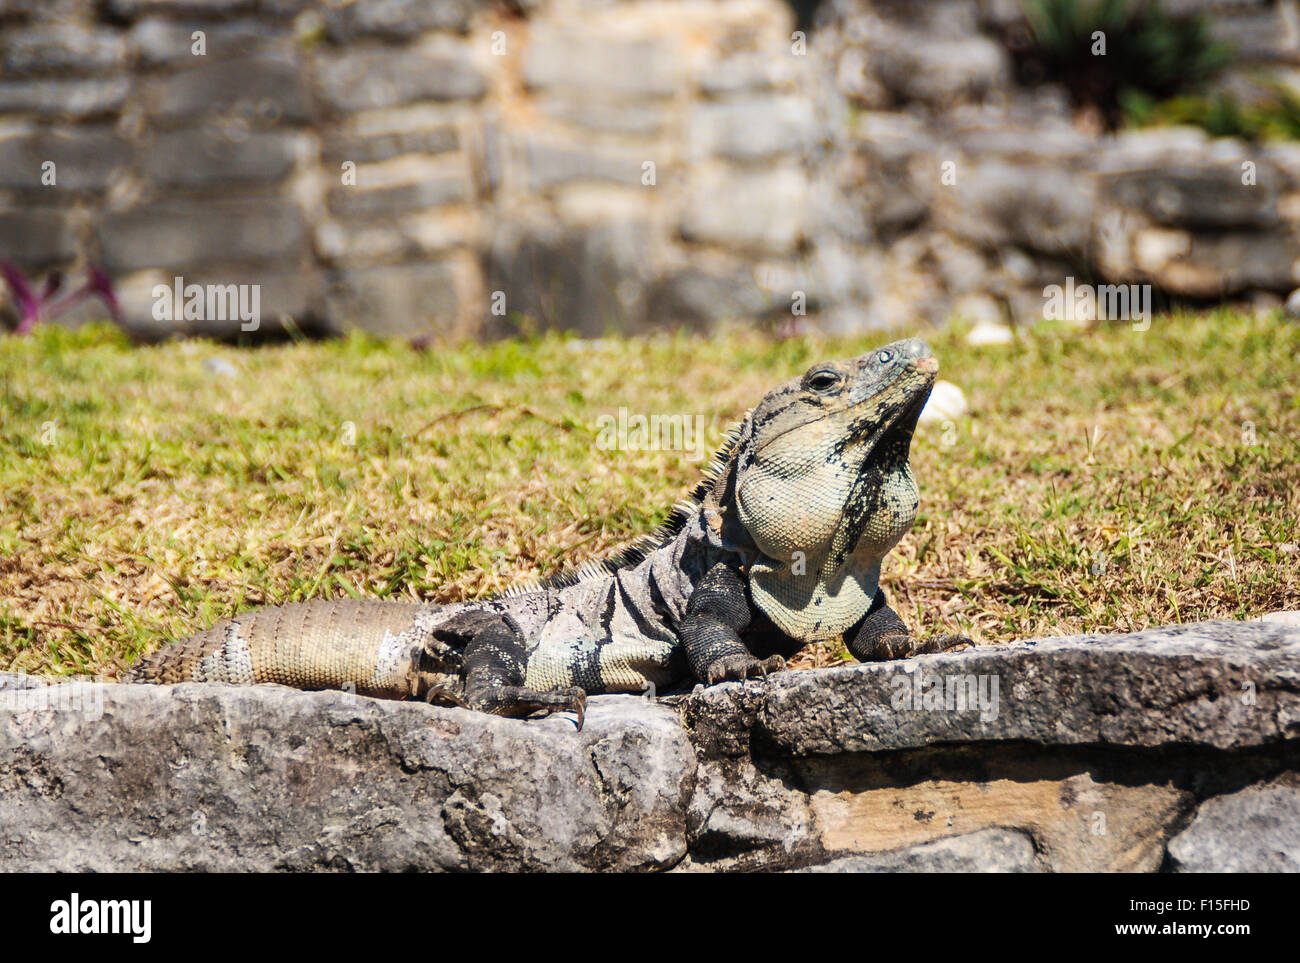 Iguane noir près de ruines Maya au Mexique. Ctenosaura similis aussi connu comme Garrobo Banque D'Images